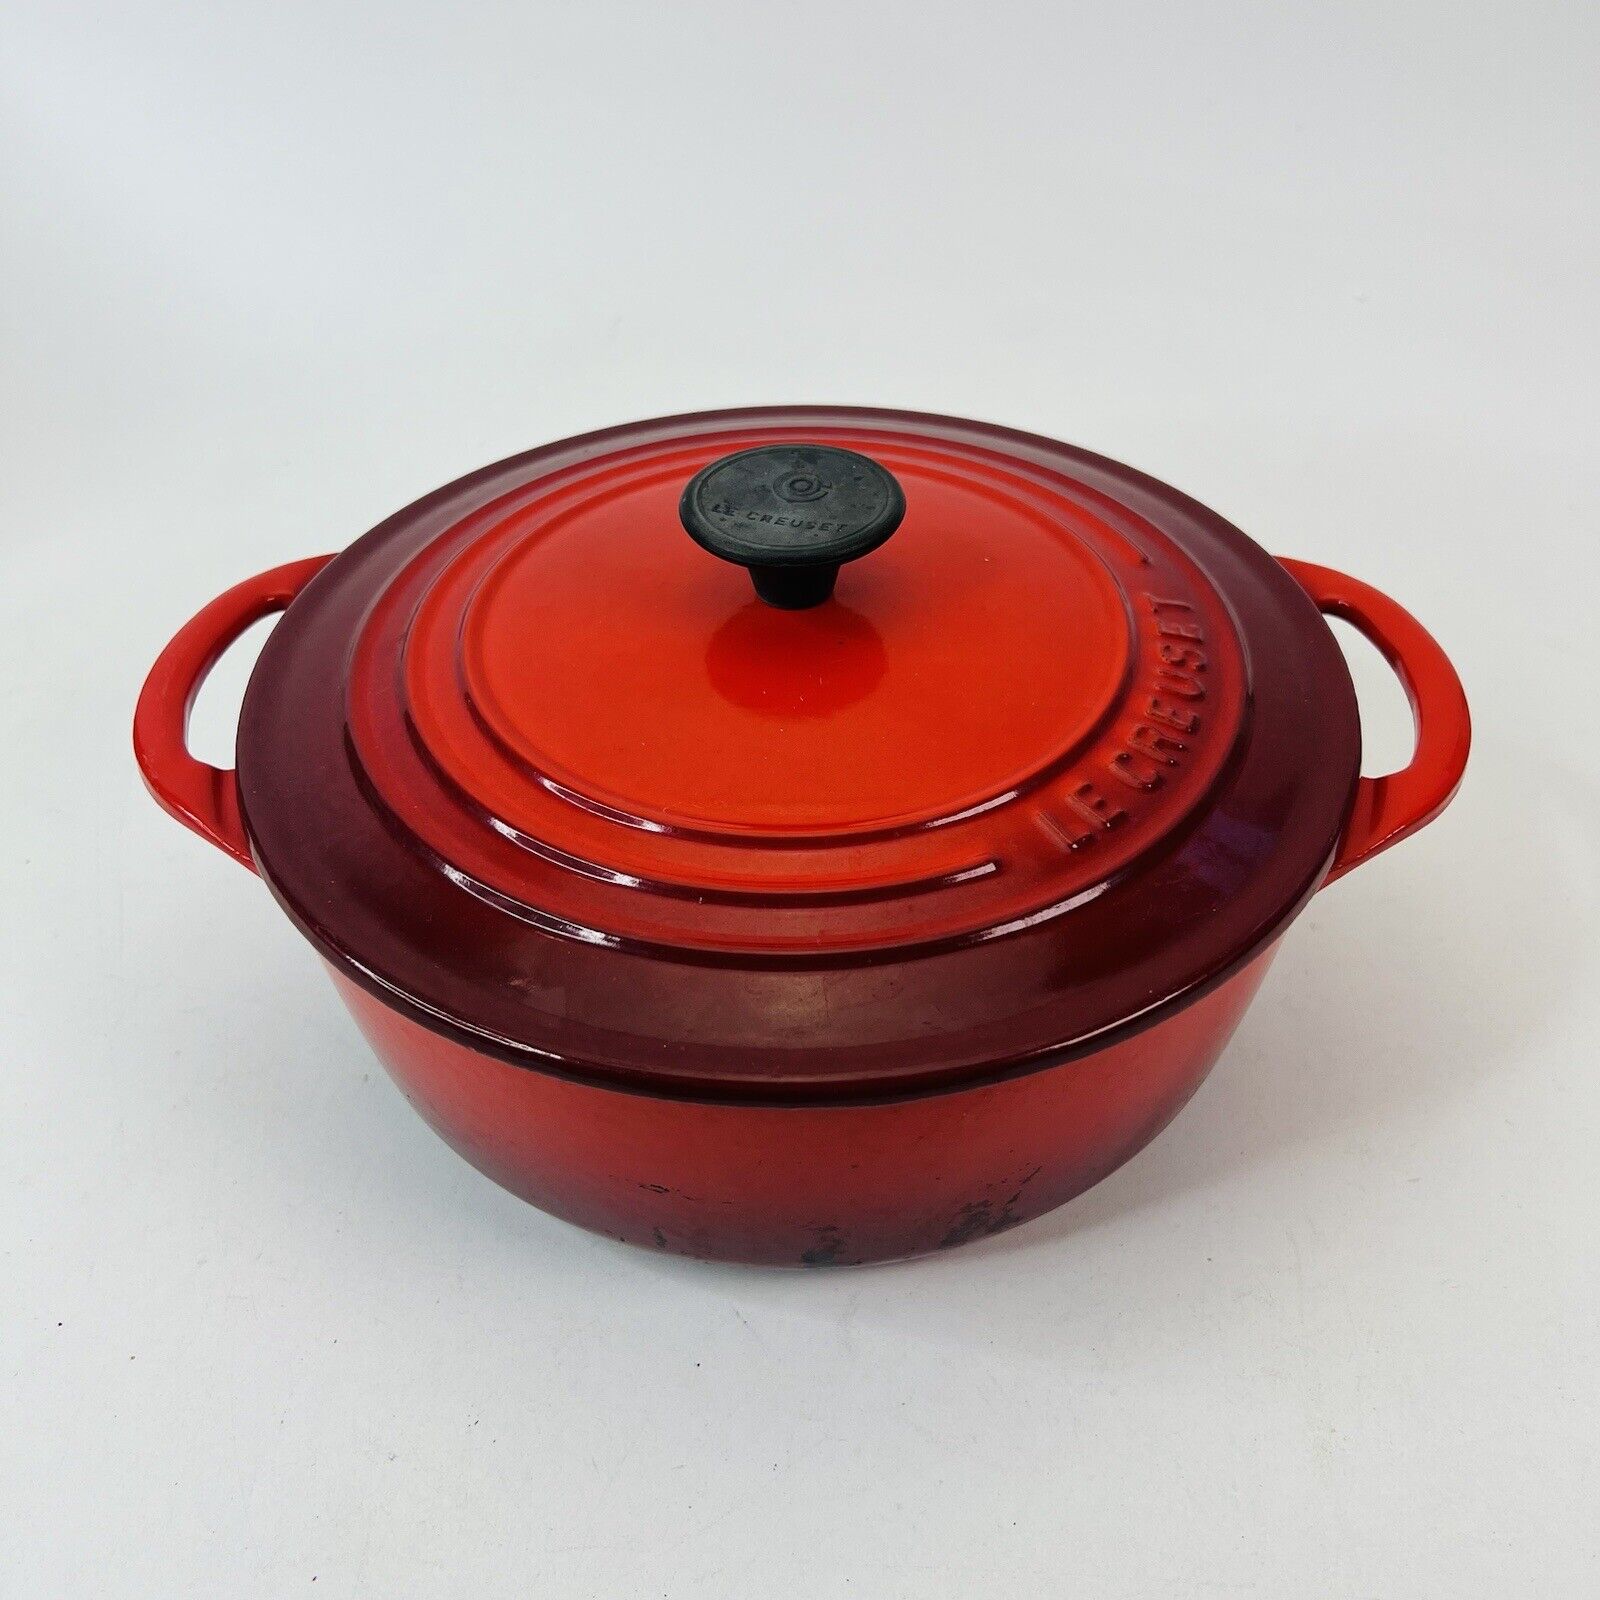 Le Creuset Cast Iron #22 Round Dutch Oven Red w/ Lid 3.5 Quart